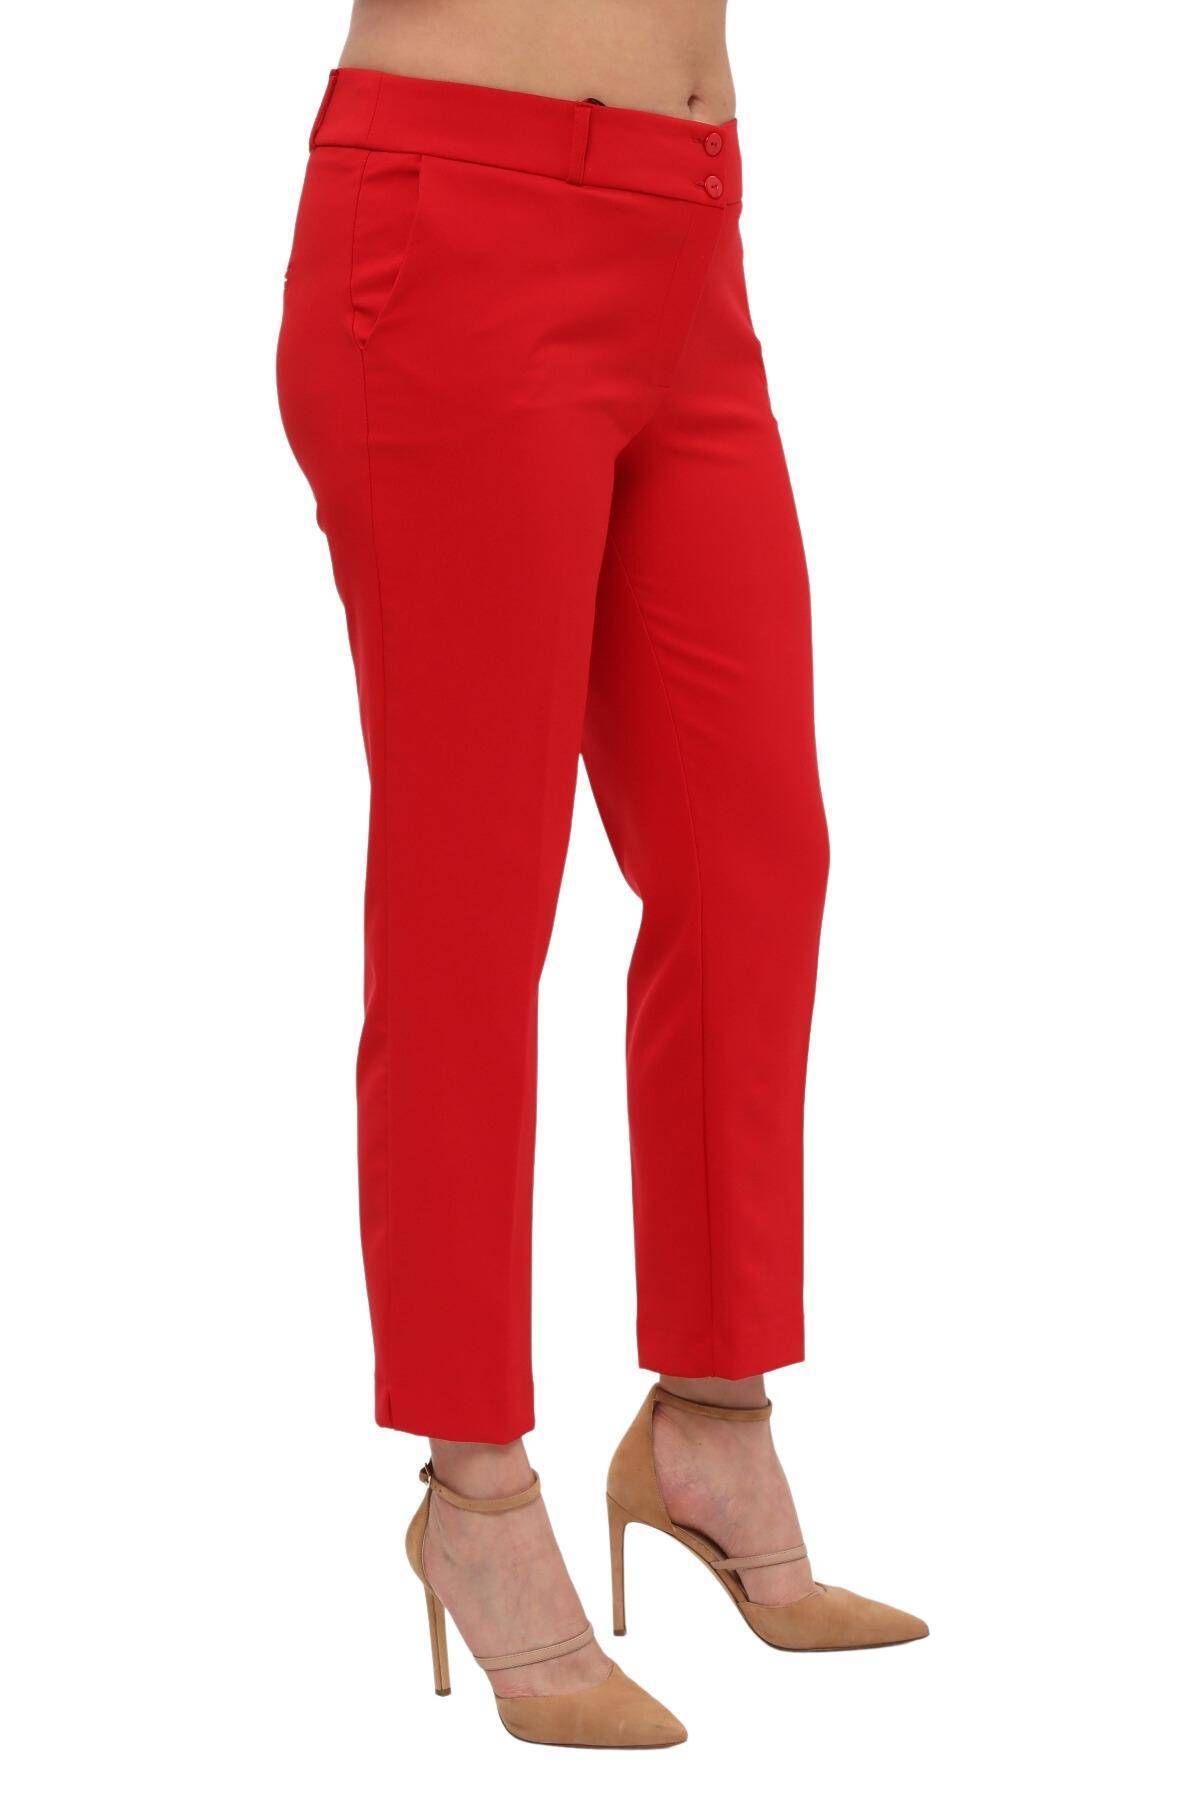 Hanezza Kadın Büyük Beden Kırmızı Bilek Boy Yüksek Bel 42-56 Likralı Pantolon